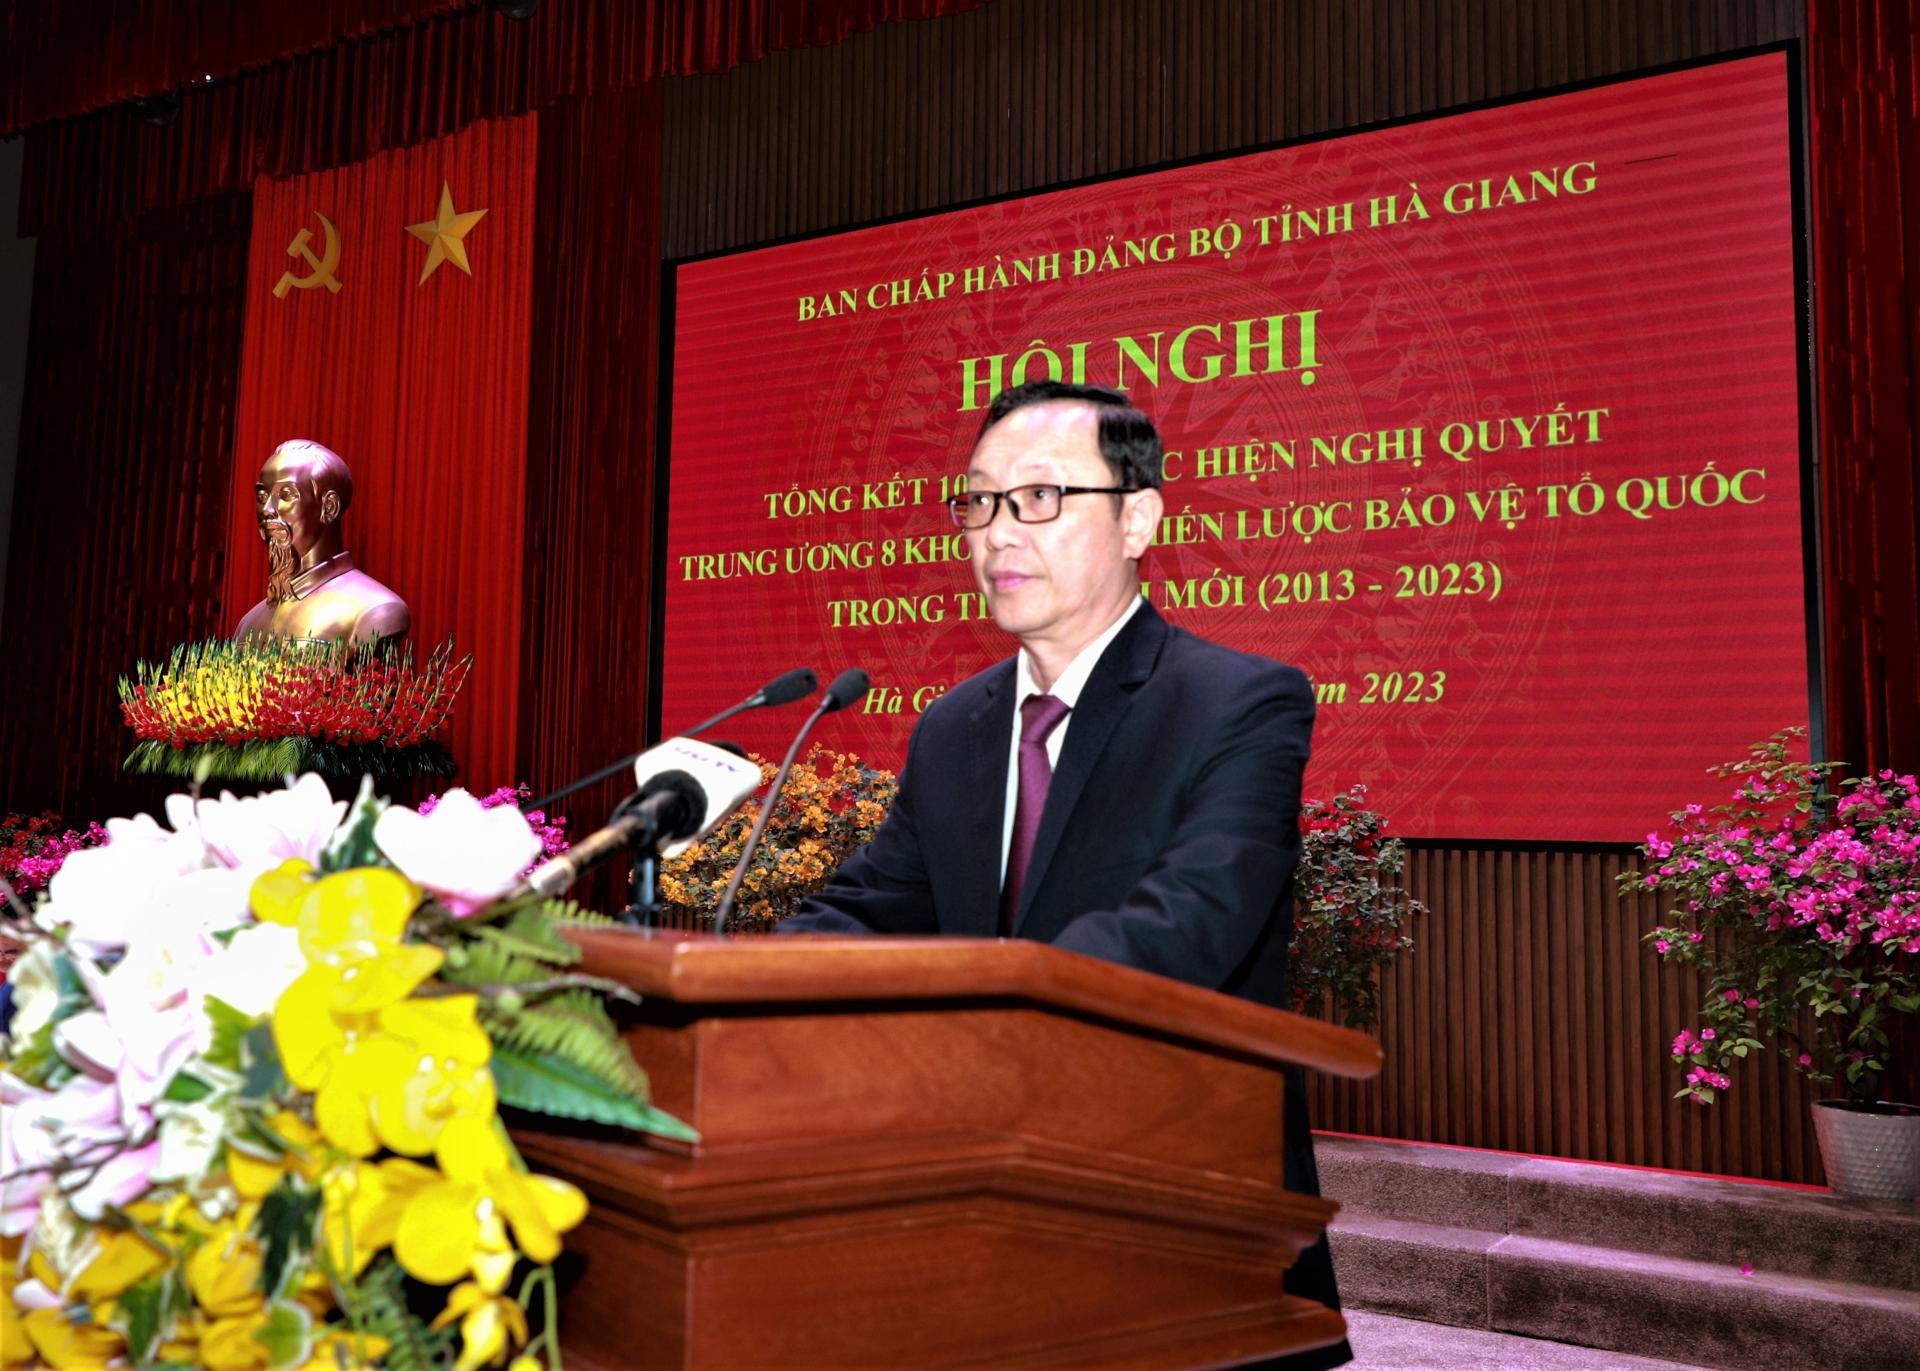 Phó Bí thư Thường trực Tỉnh ủy, Chủ tịch HĐND tỉnh Thào Hồng Sơn báo cáo kết quả 10 năm thực hiện Nghị quyết T.Ư 8 khóa XI về Chiến lược bảo vệ Tổ quốc trong tình hình mới (2013 - 2023).